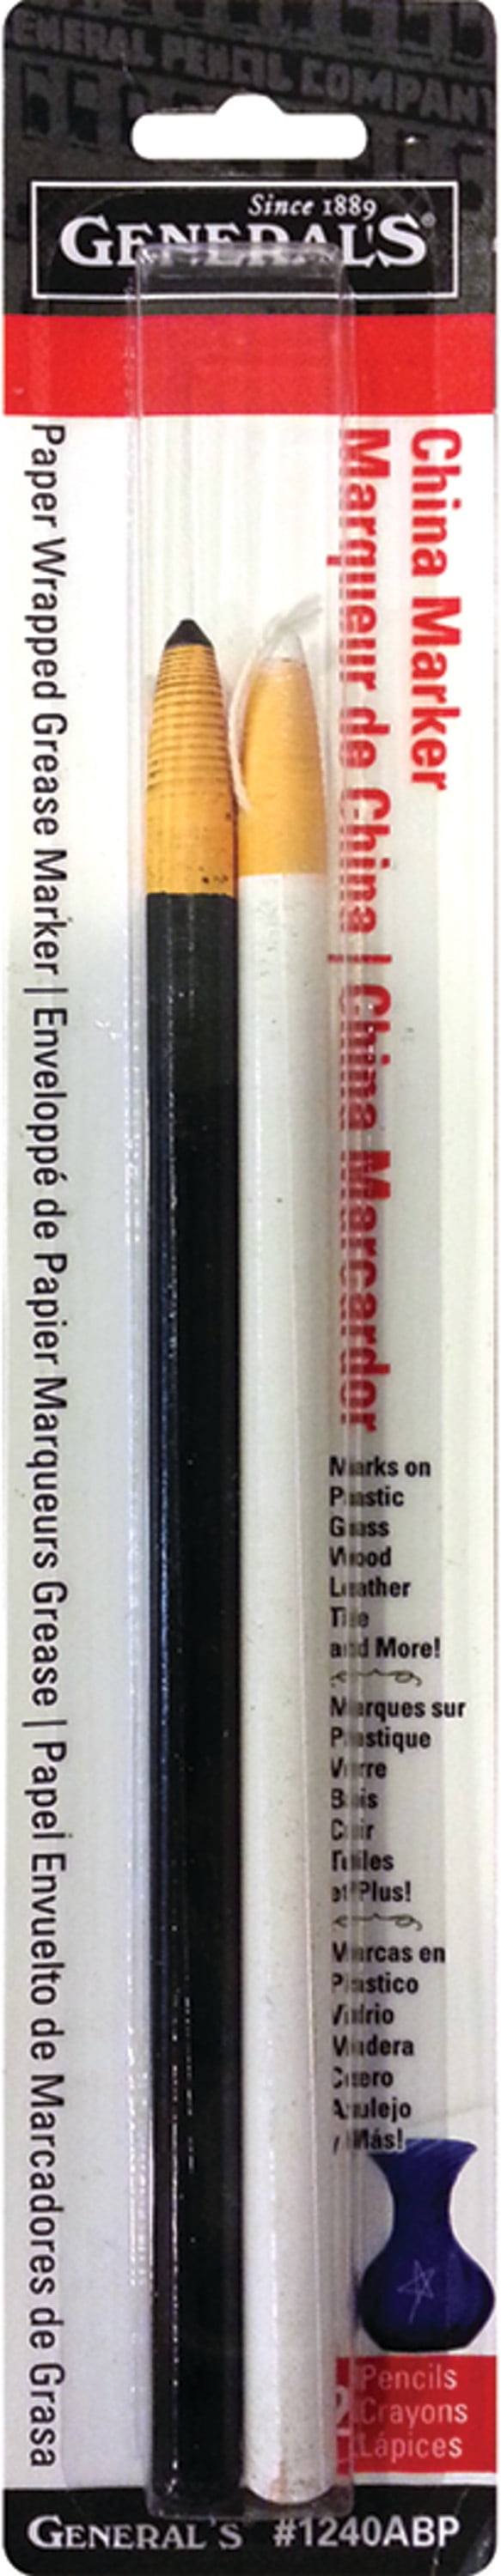 China Marker Multi-Purpose Grease Pencils 2/Pkg-Black & White - 044974124522